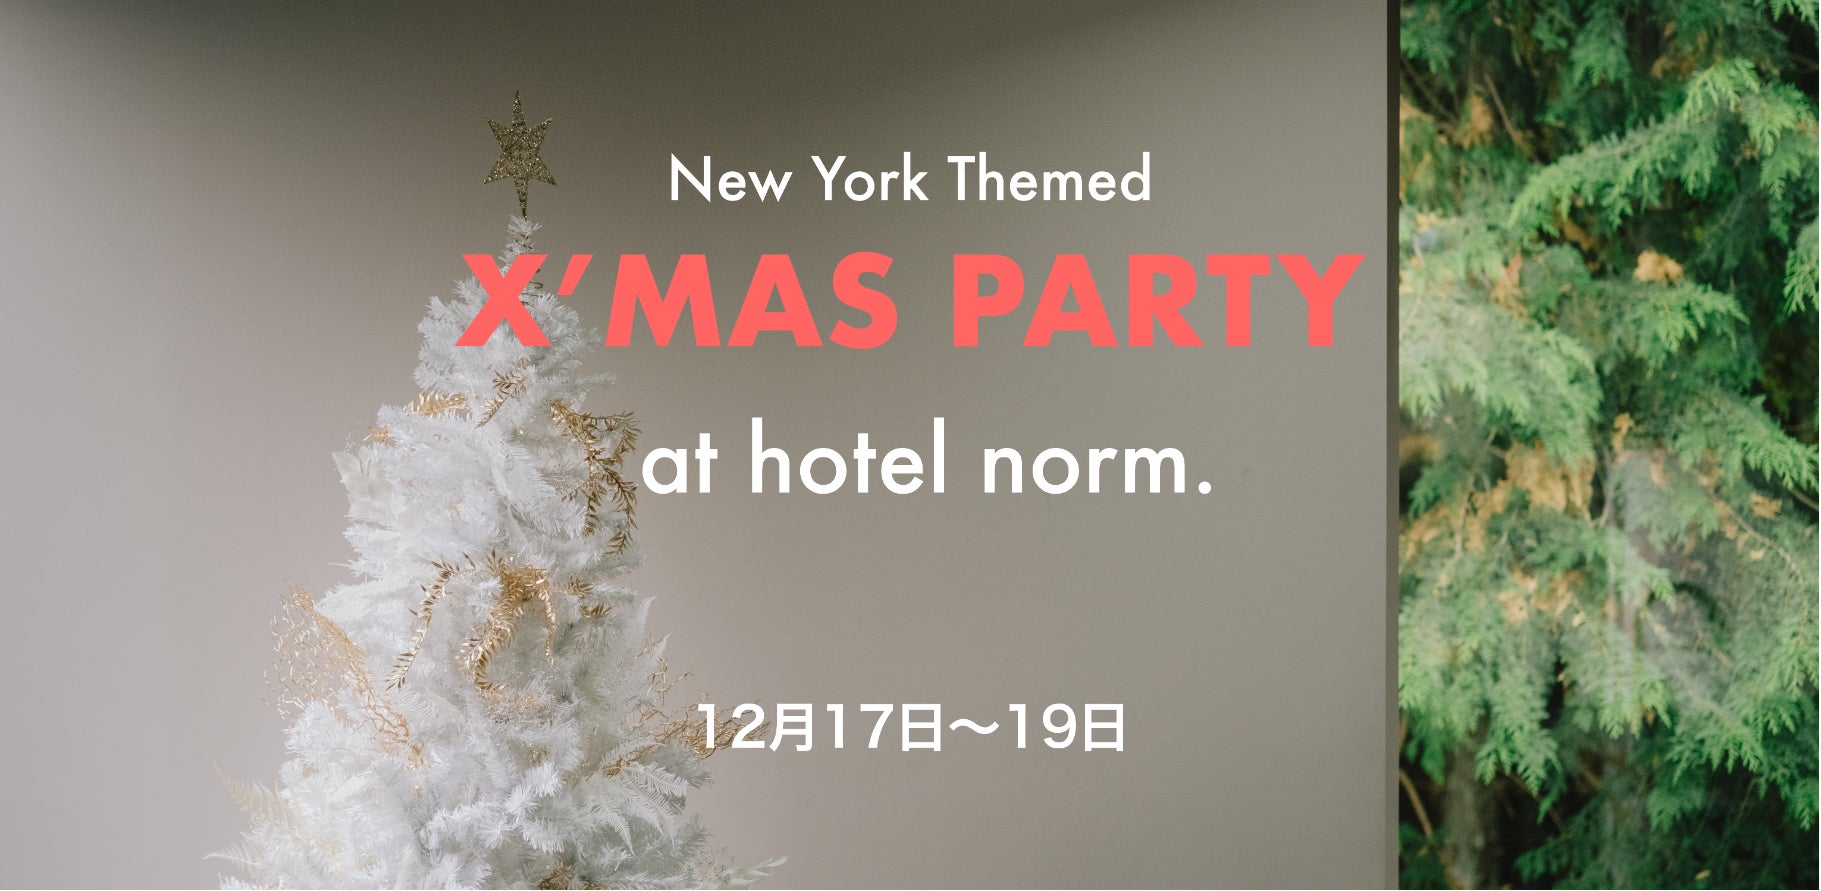 河口湖のプライベートホテル「hotel norm.」が初のオープンホテルイベントとなるクリスマスパーティーを開催します。